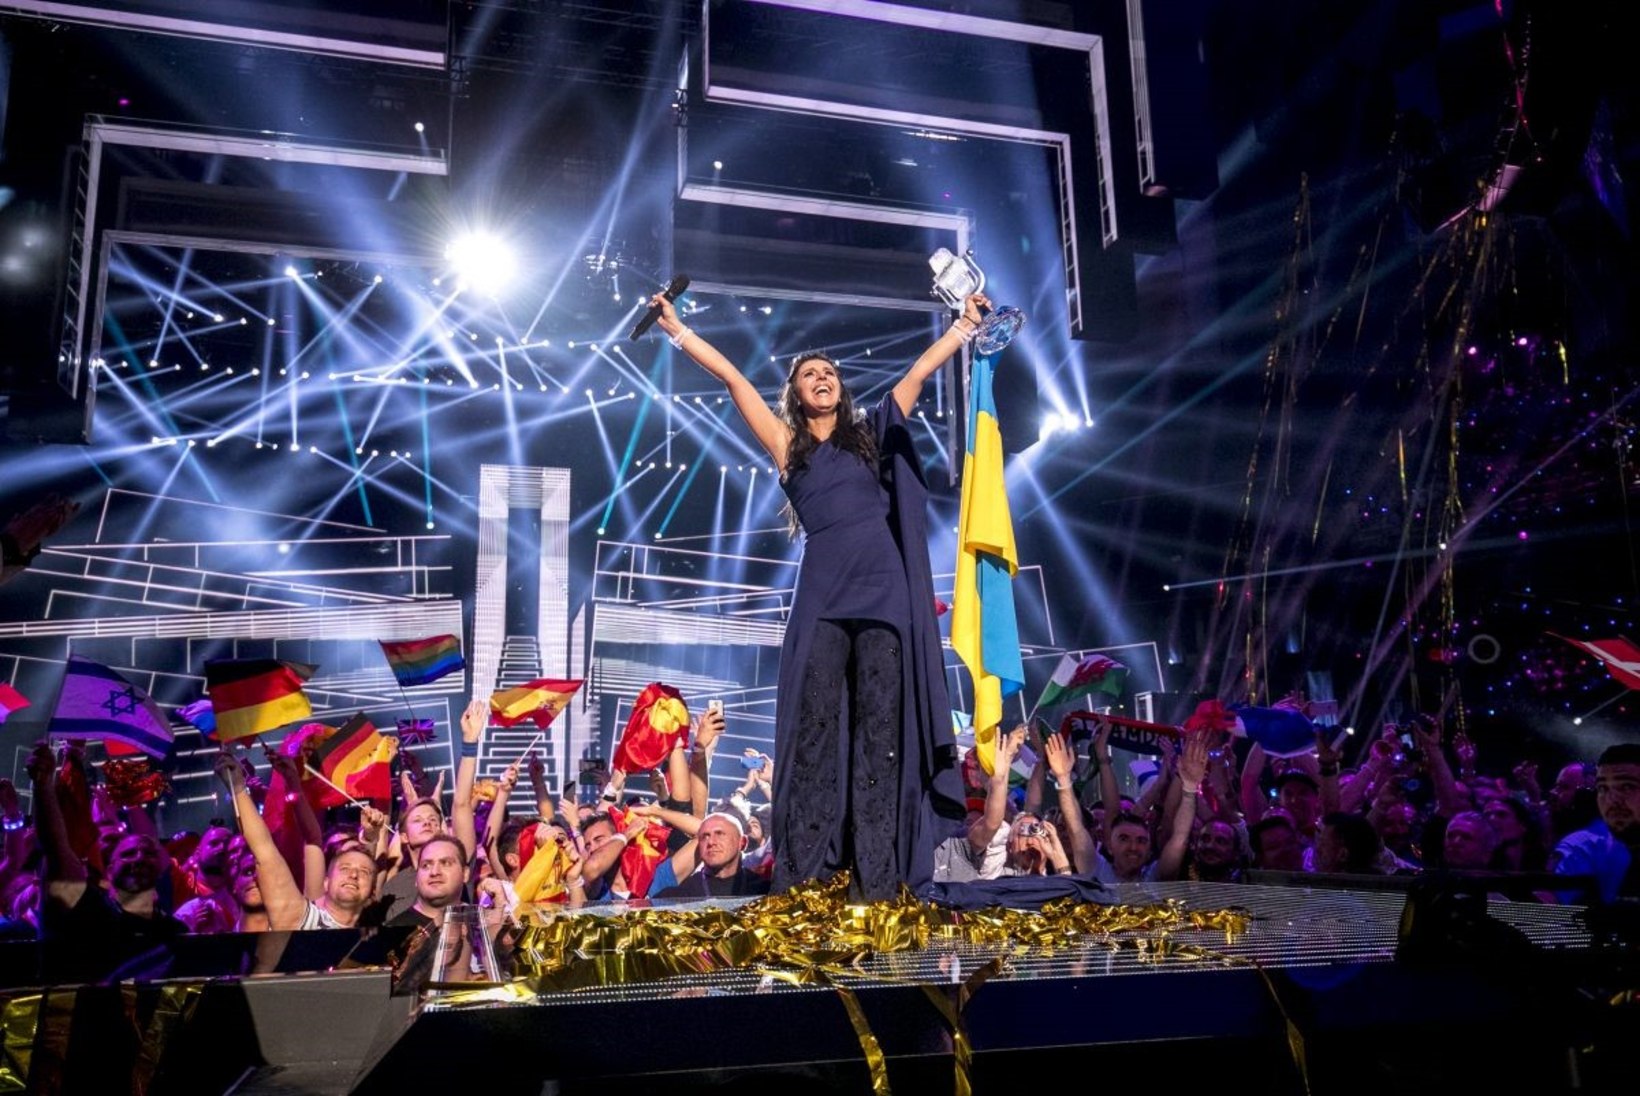 Eurovisioni võitja Jamala: kuulasin oma etteasteks valmistudes filmi "Schindleri nimekiri" nimilugu ja soovisin, et minu laulus oleks samasugune jõud